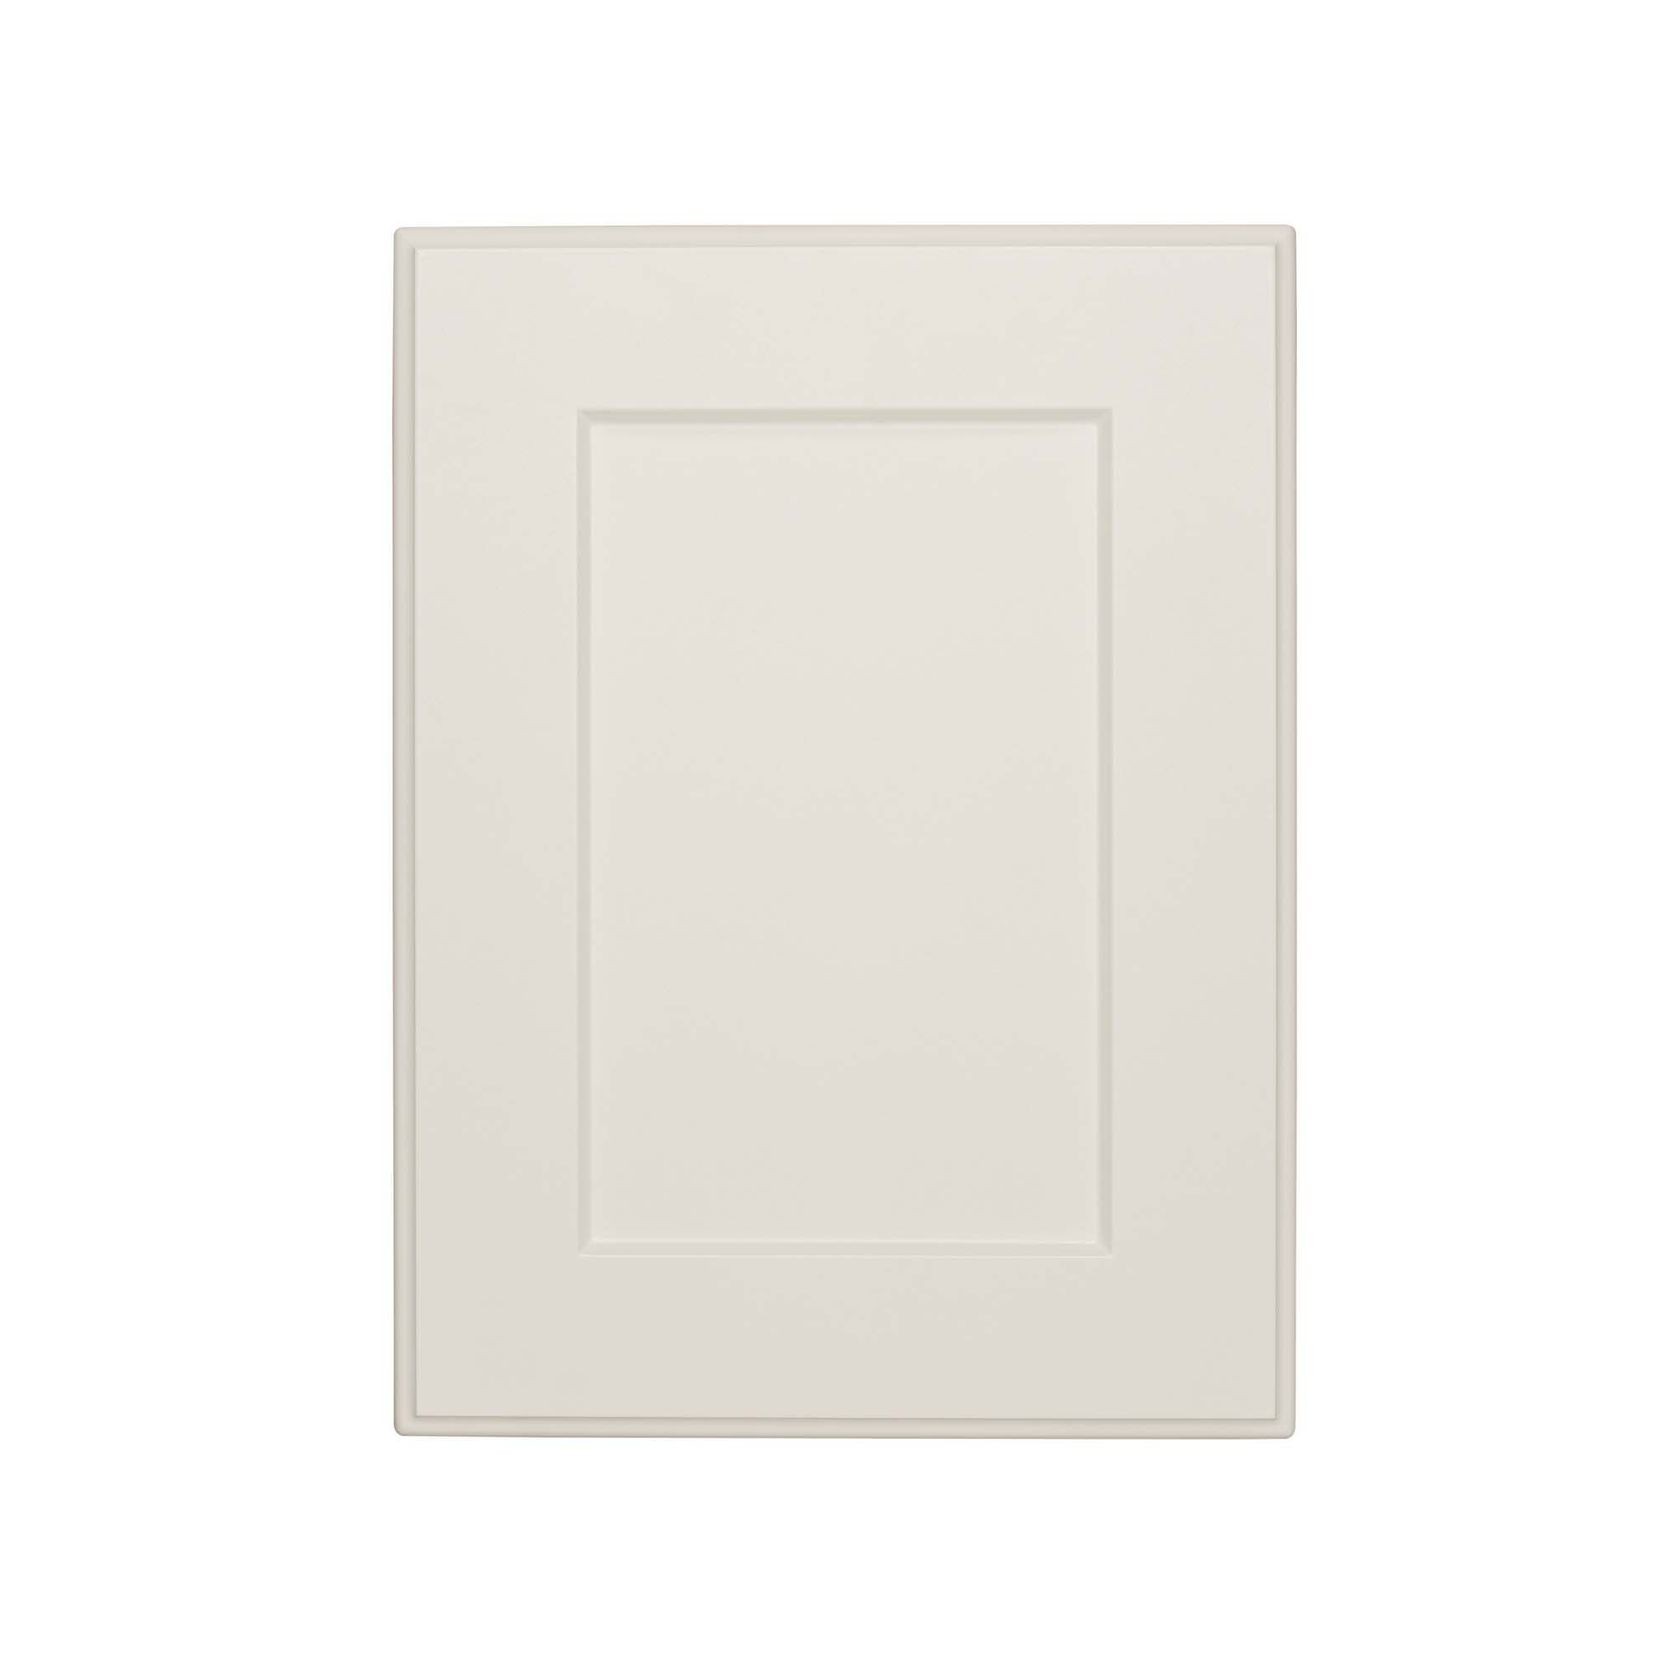 Durostyle Platinum Series - York Kitchen Cabinet Doors gallery detail image